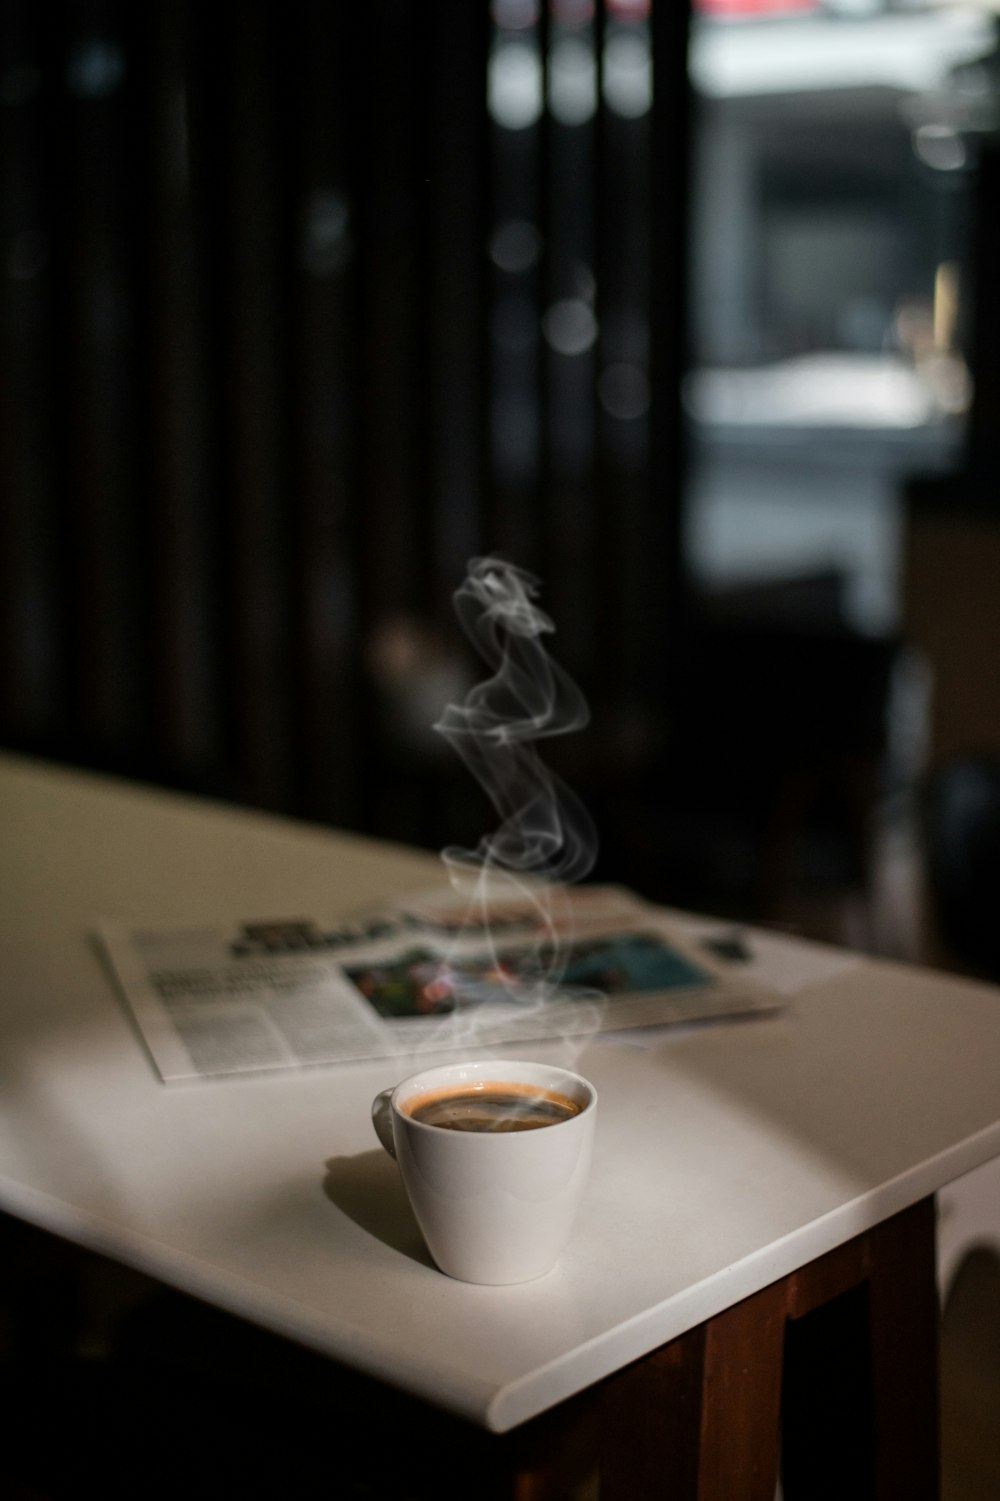 una taza de café encima de una mesa